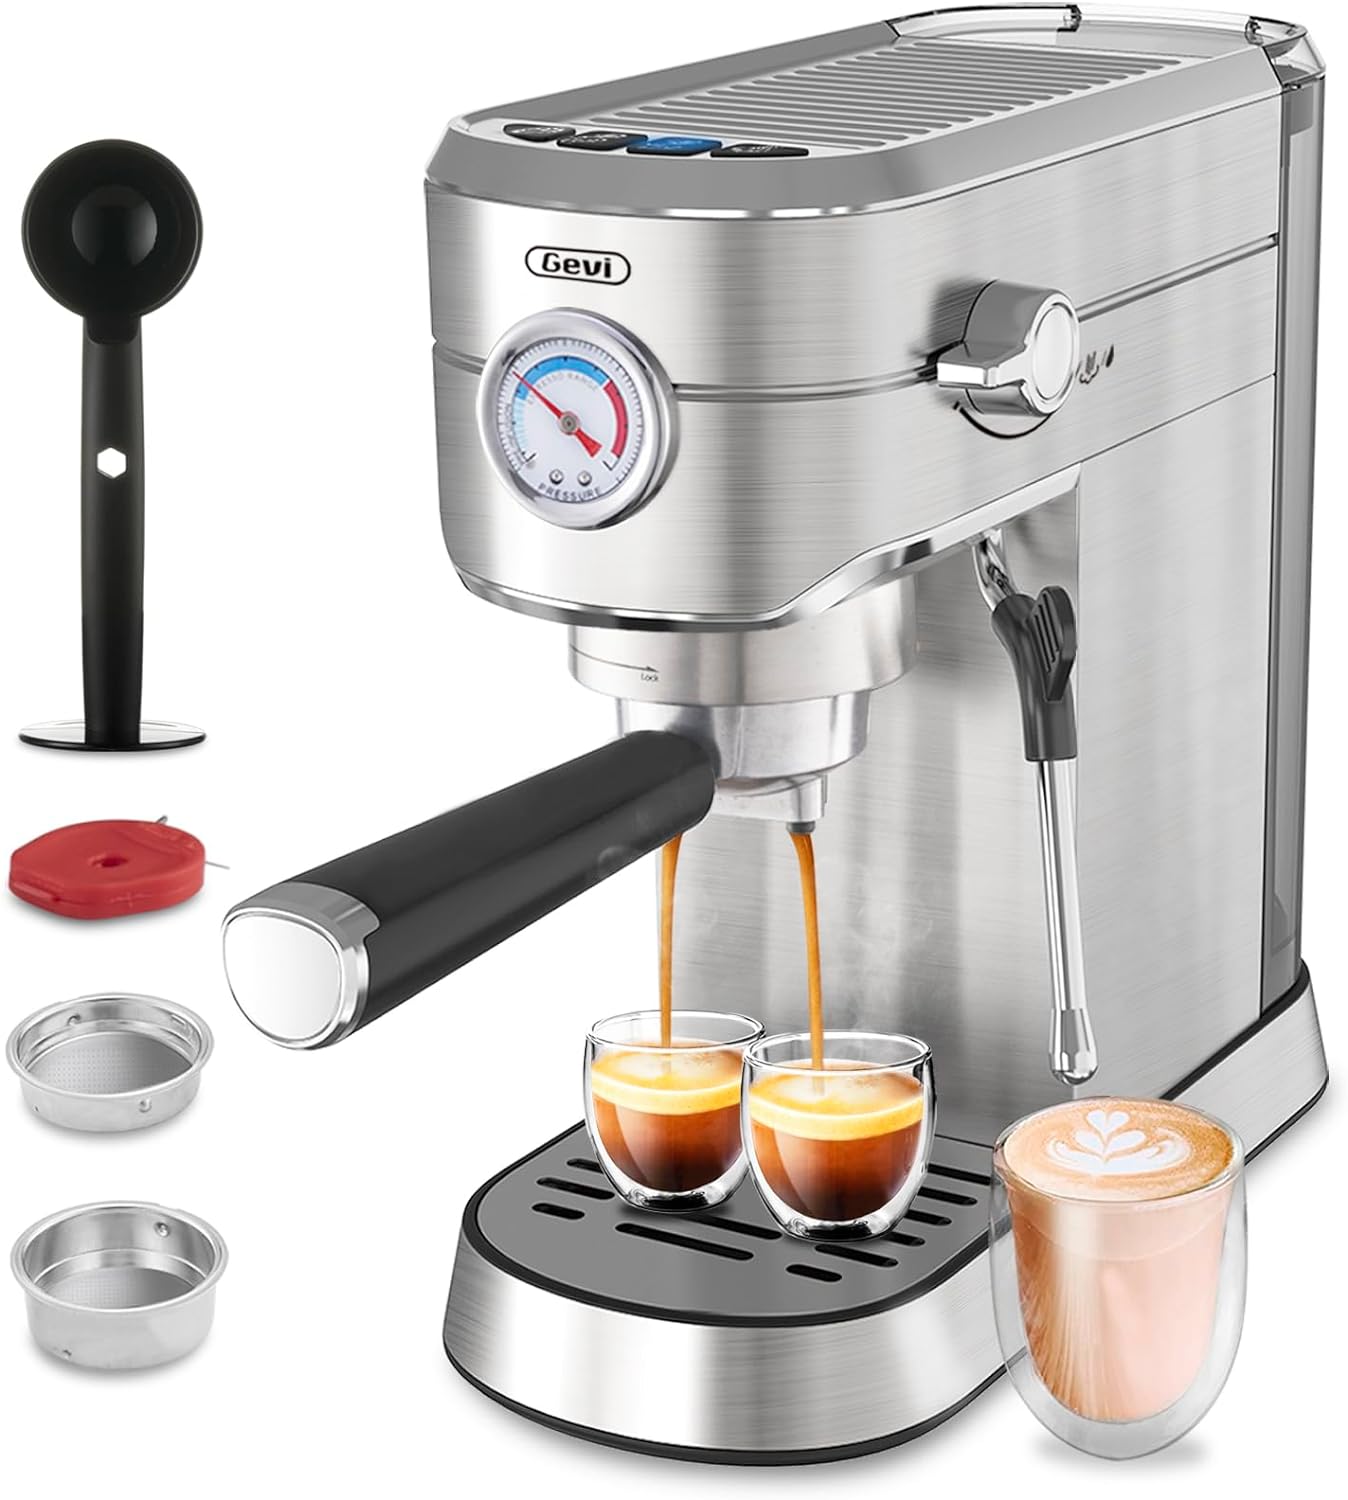 Gevi Espresso Machine 20 Bar Professional Espresso Maker with Milk Frother Steam Wand, Compact Semi-Automatic Espresso Machines for Cappuccino, Latte, Commercial Espresso Machines Coffee Makers